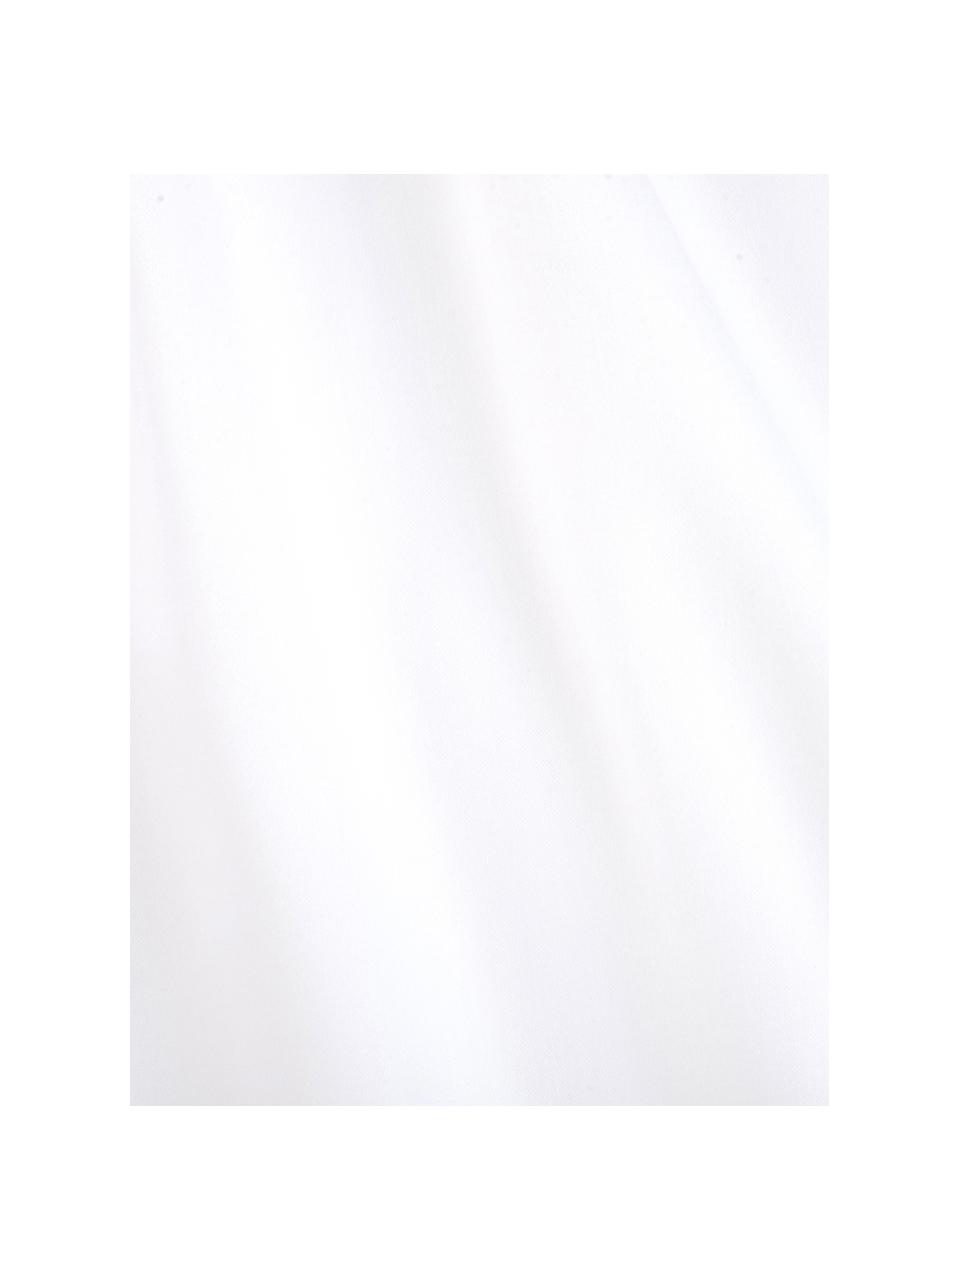 Set lenzuola in raso di cotone bianco Comfort, Tessuto: raso Densità del filo 250, Bianco, 240 x 300 cm + 2 federe 50 x 80 cm